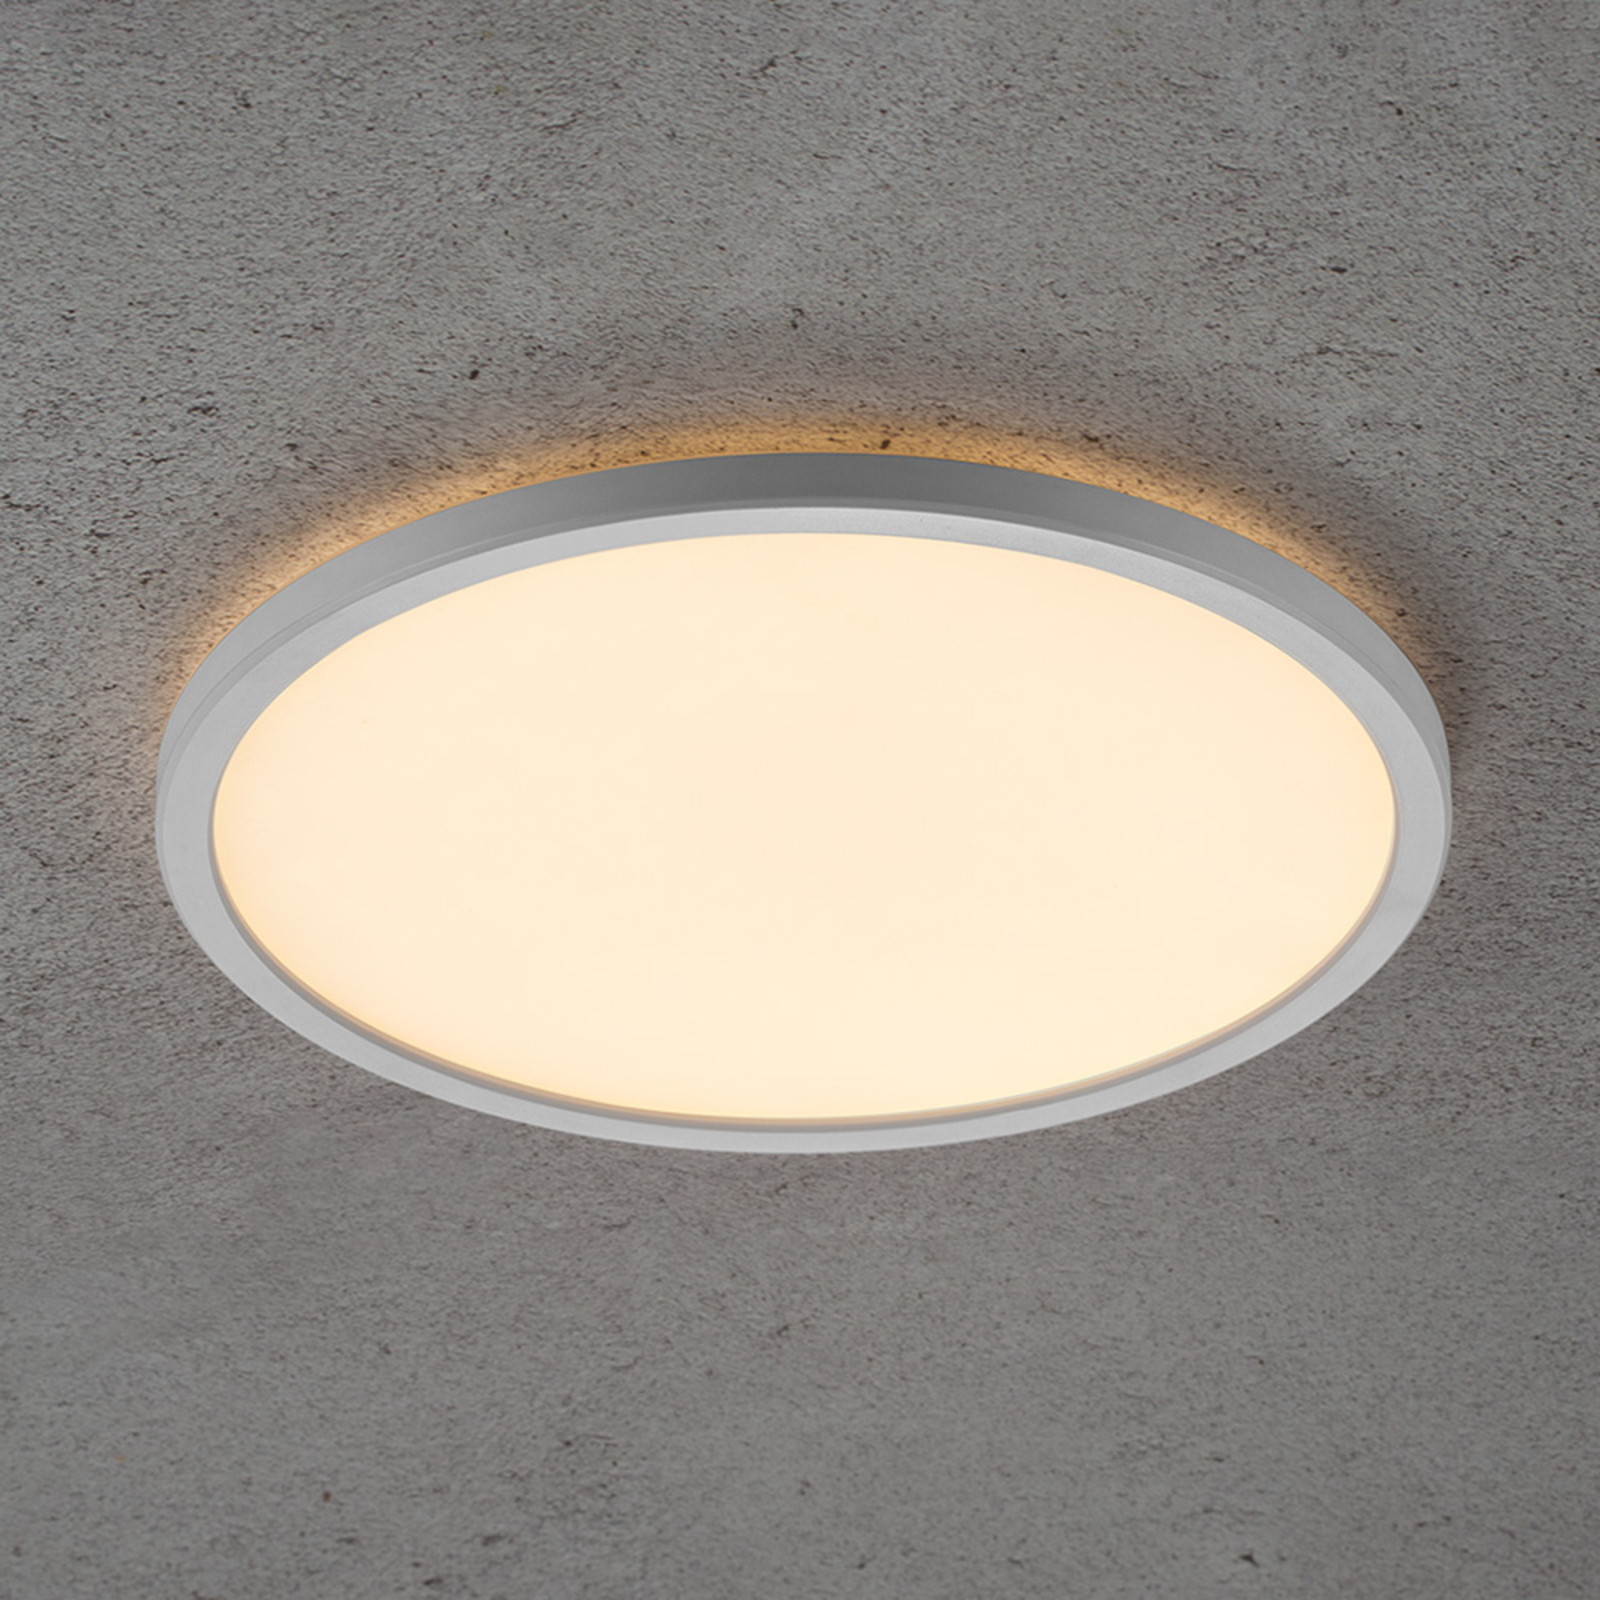 Φωτιστικό οροφής Planura LED, με δυνατότητα ρύθμισης φωτισμού, Ø 29 cm